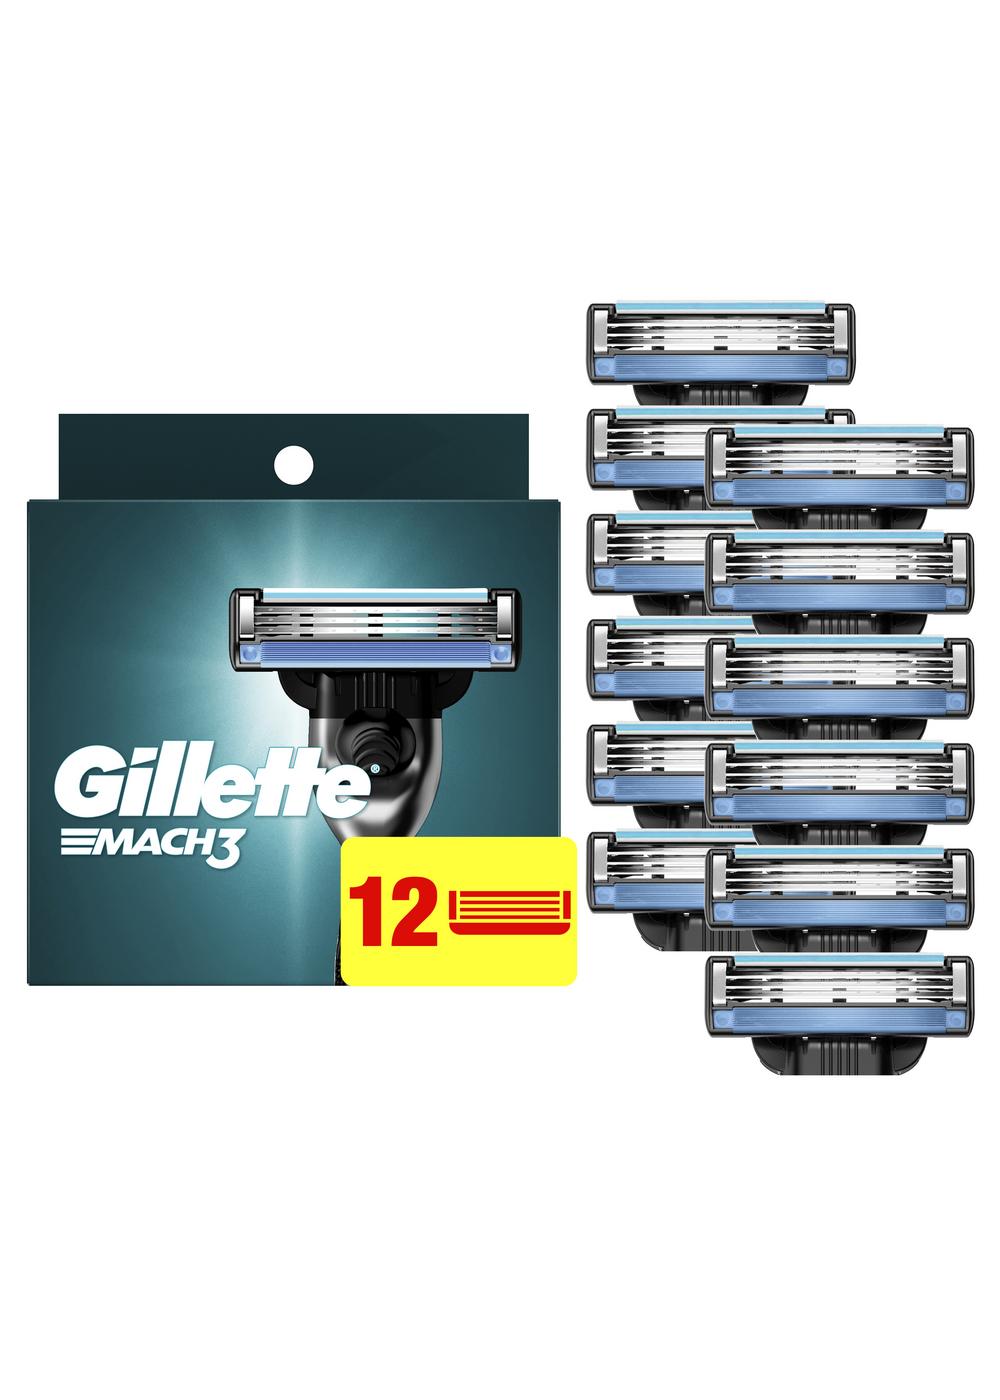 Gillette Mach3 Razor Blade Refills; image 7 of 11